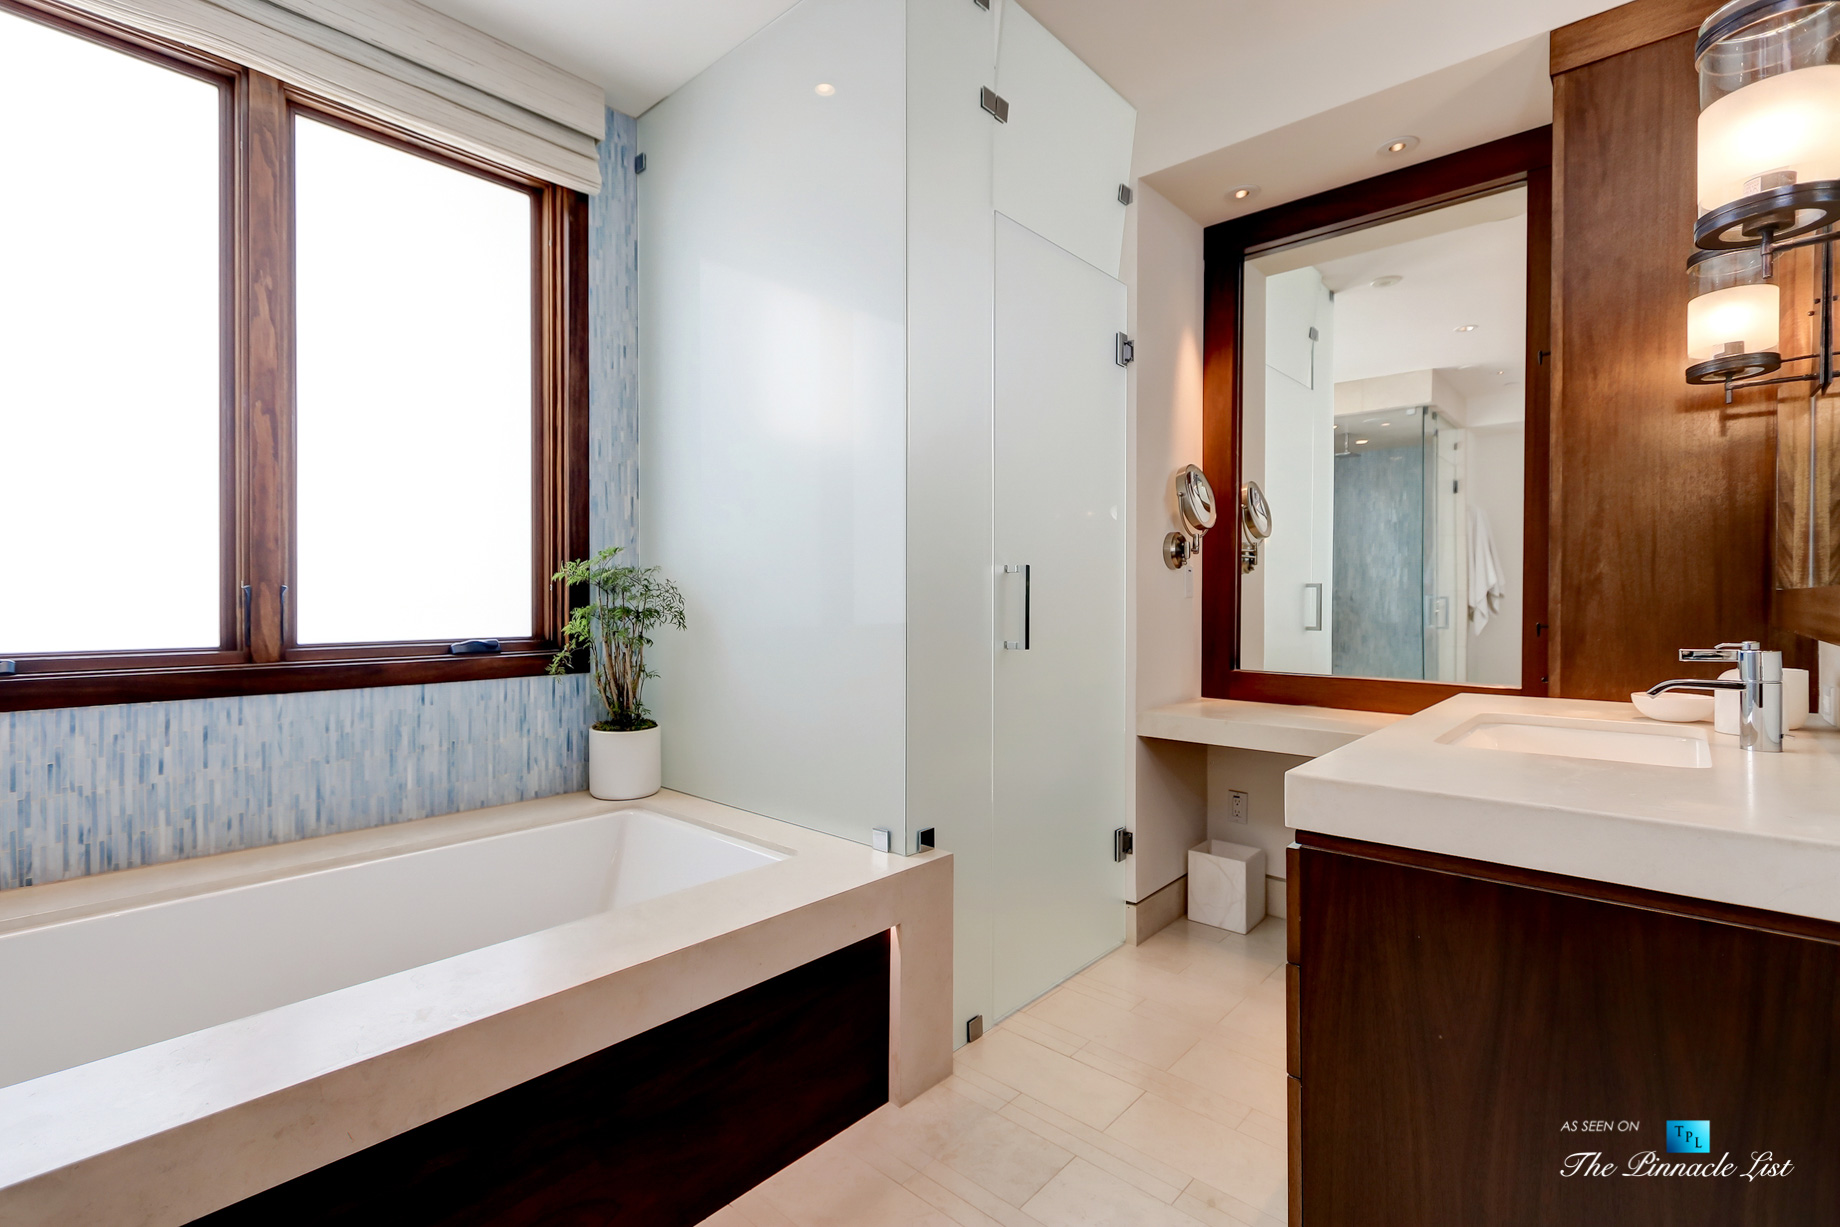 205 20th Street, Manhattan Beach, CA, USA - Master Bathroom - Luxury Real Estate - Ocean View Home